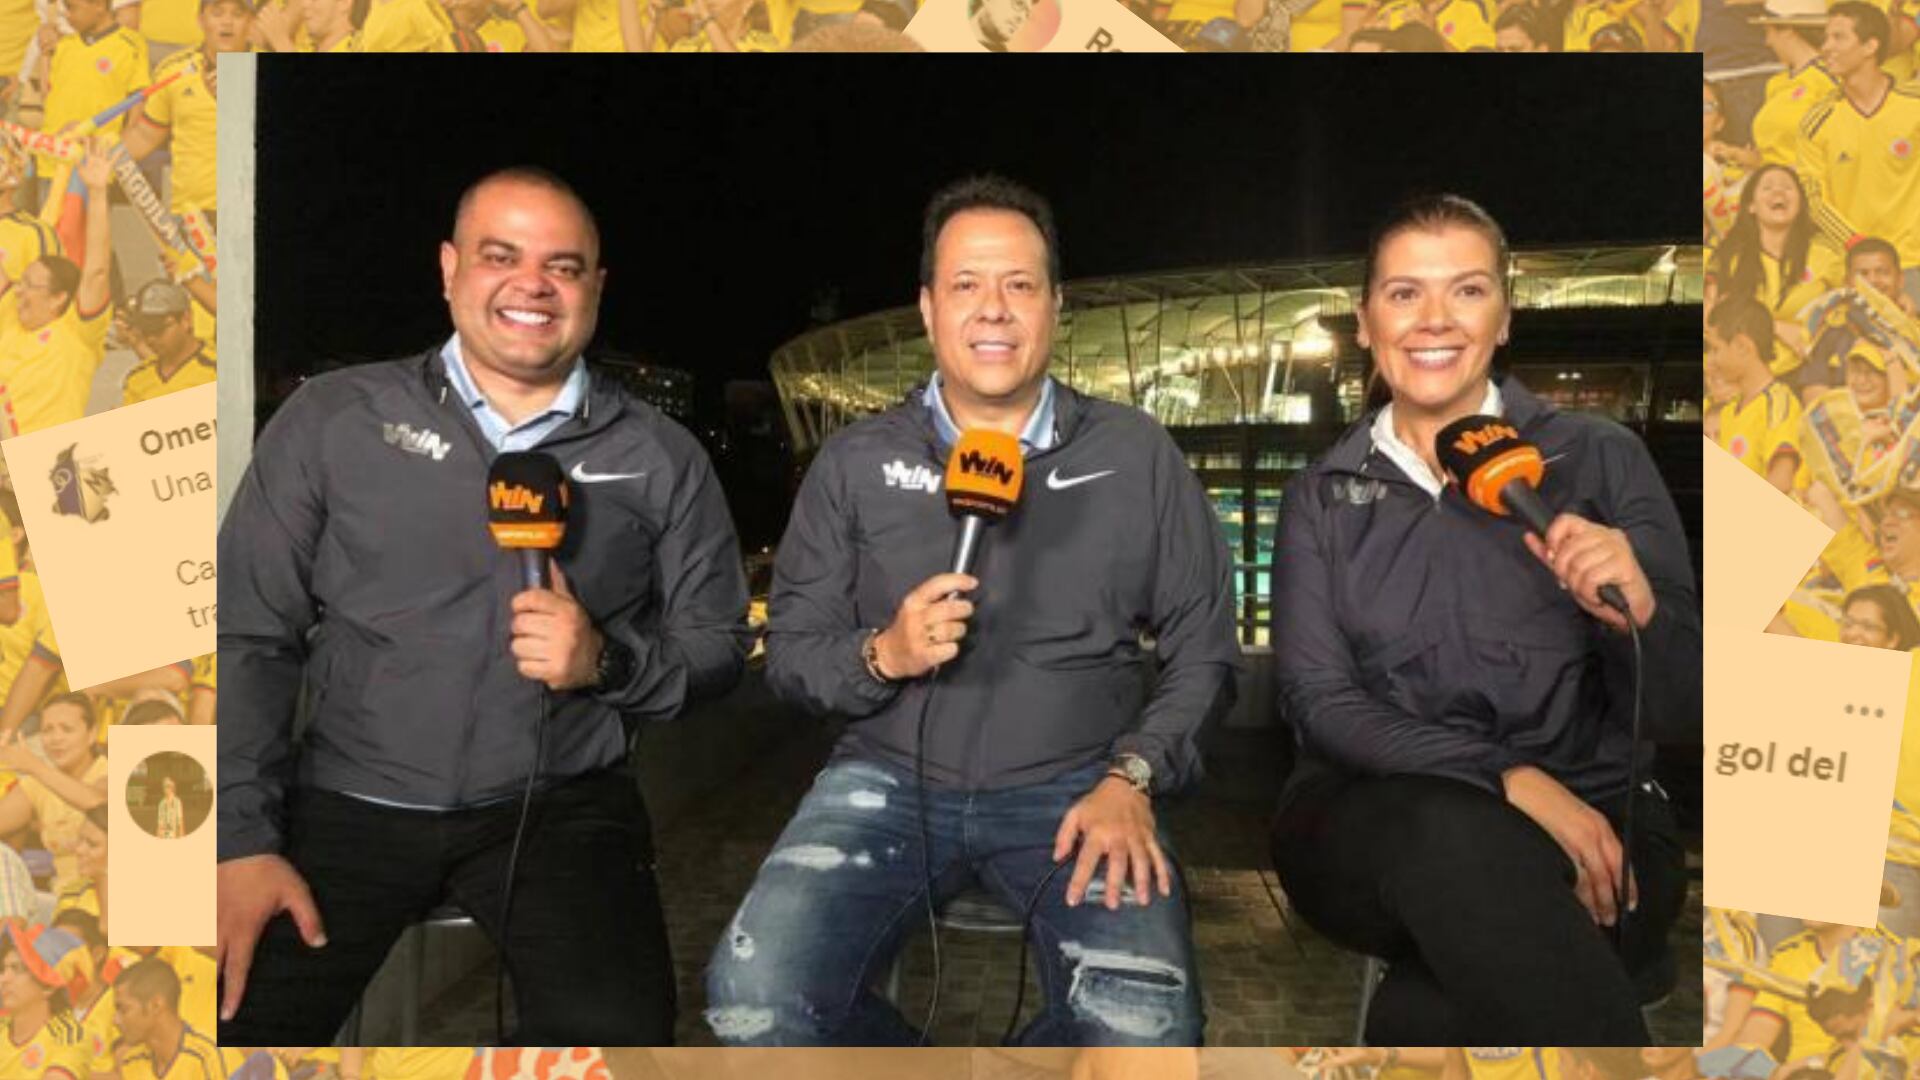 Javier Fernández Franco presenta programas de televisión, noticieros y es una de las voces más reconocidas en el fútbol profesional colombiano - crédito Win Sports